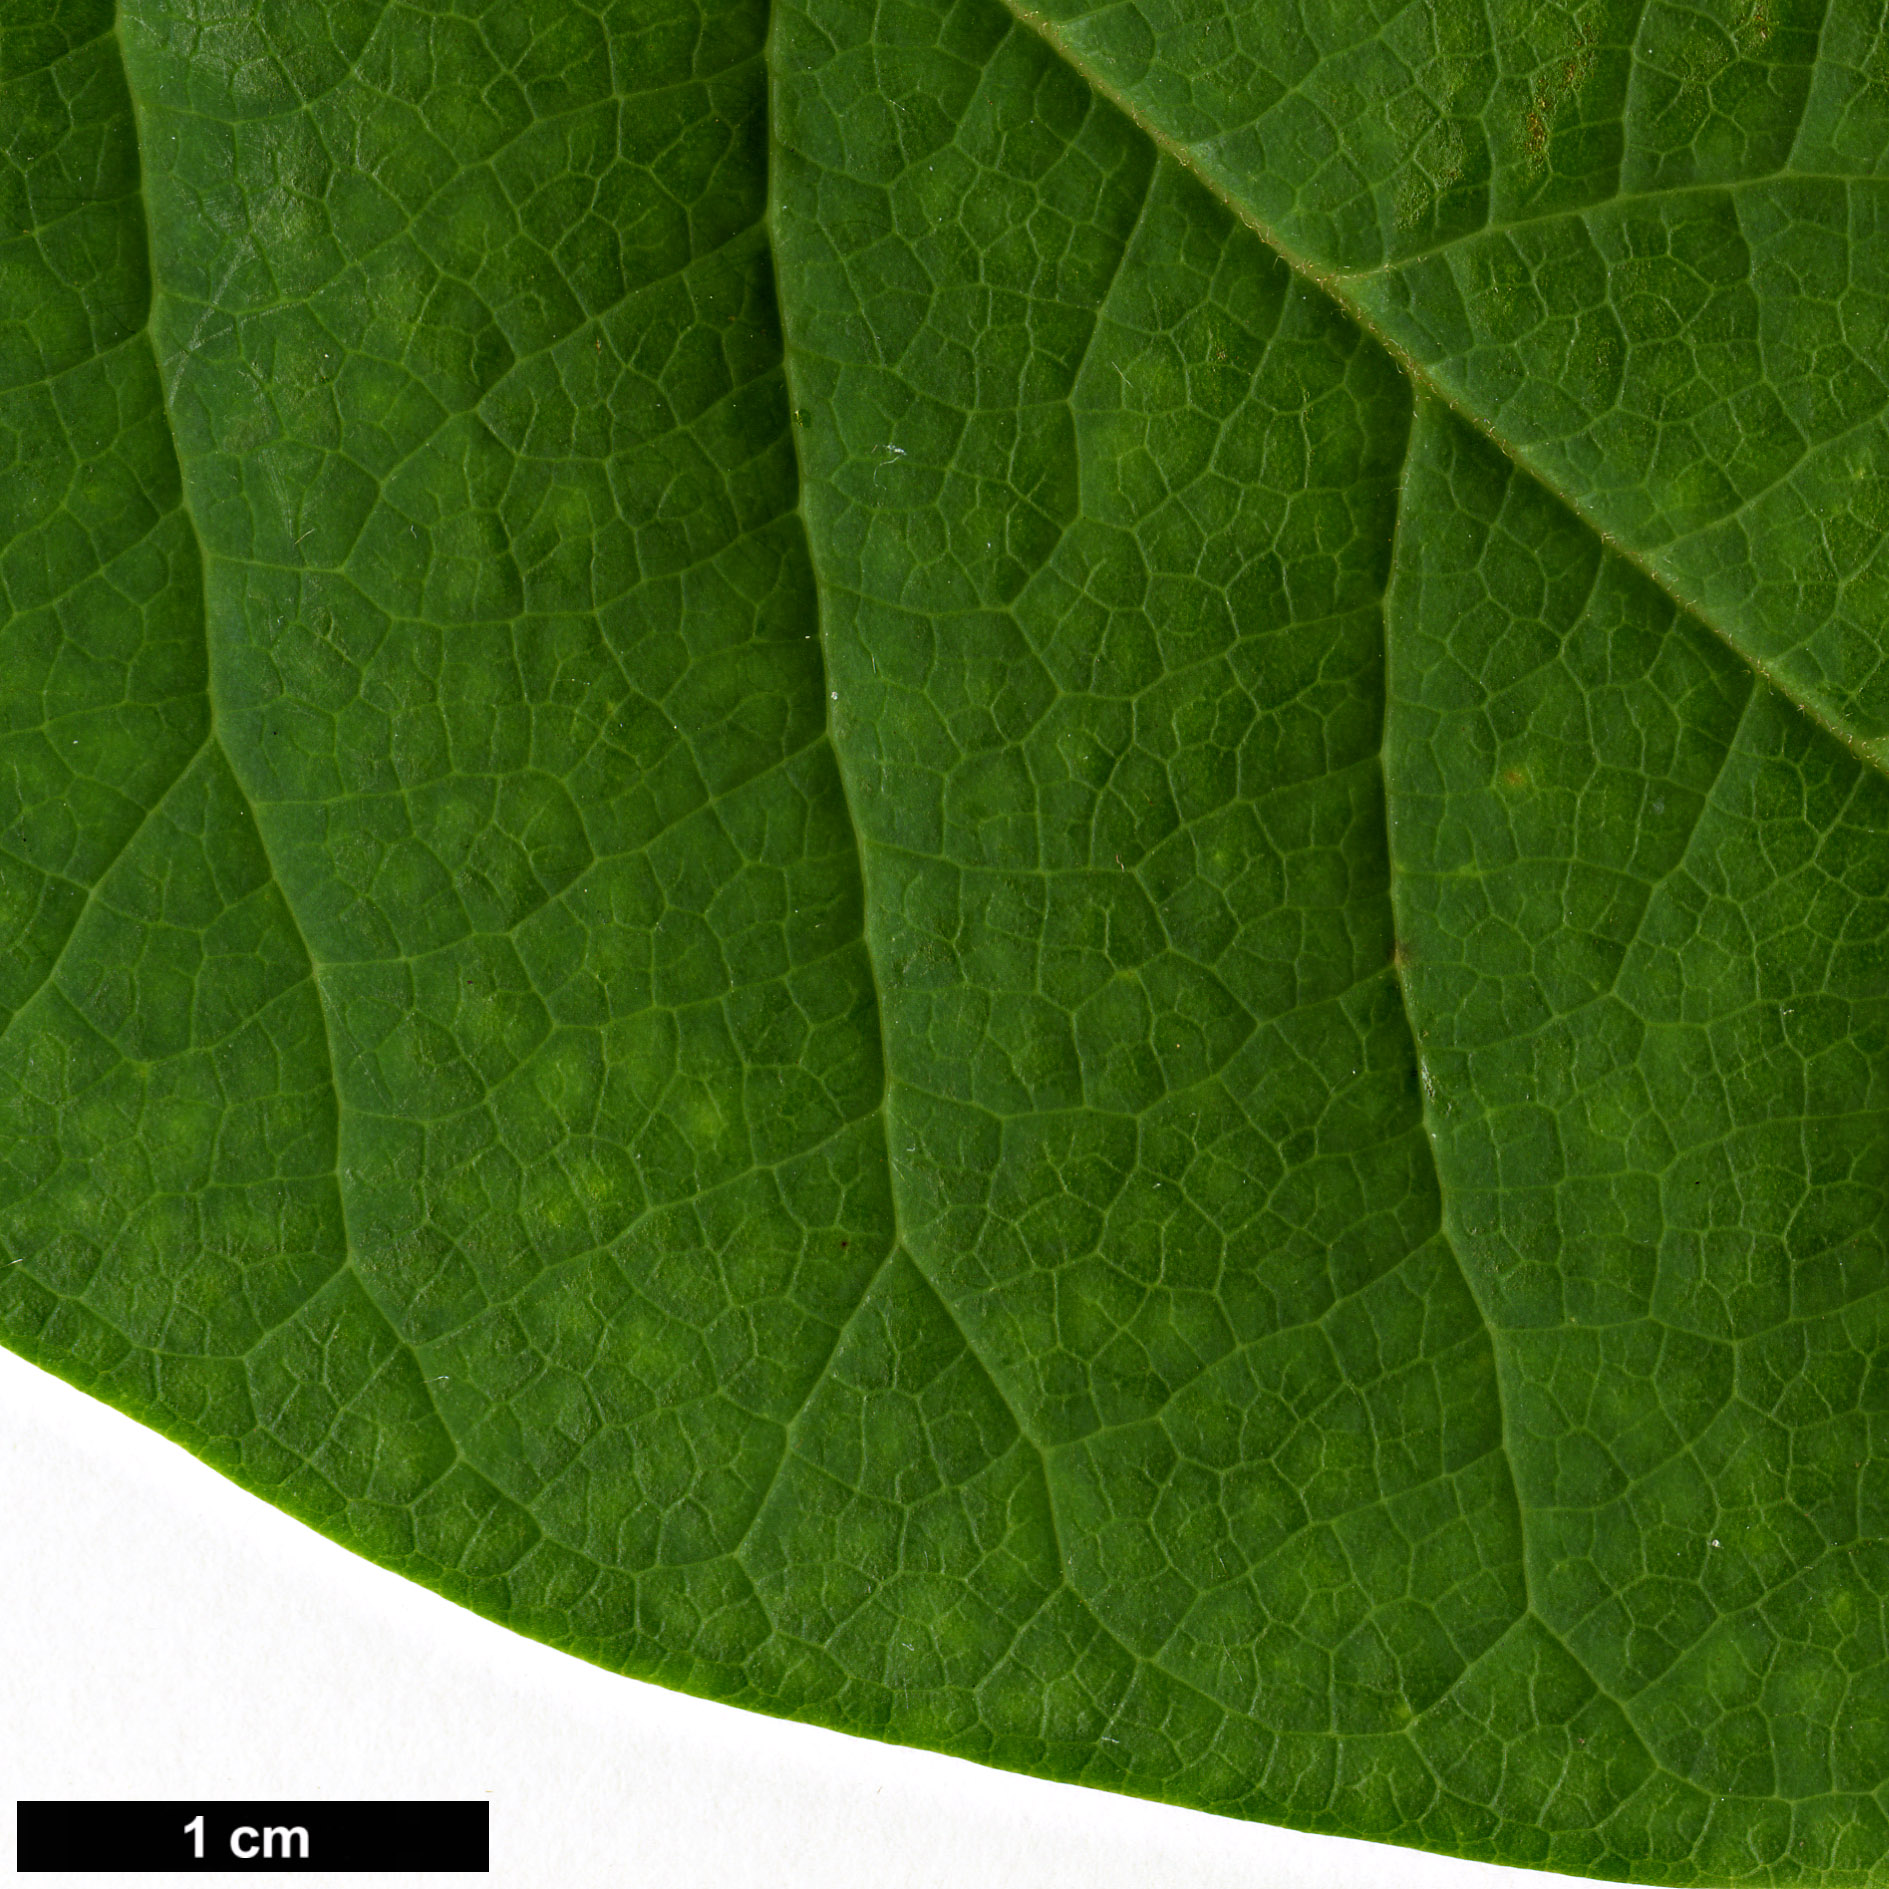 High resolution image: Family: Magnoliaceae - Genus: Magnolia - Taxon: sinensis